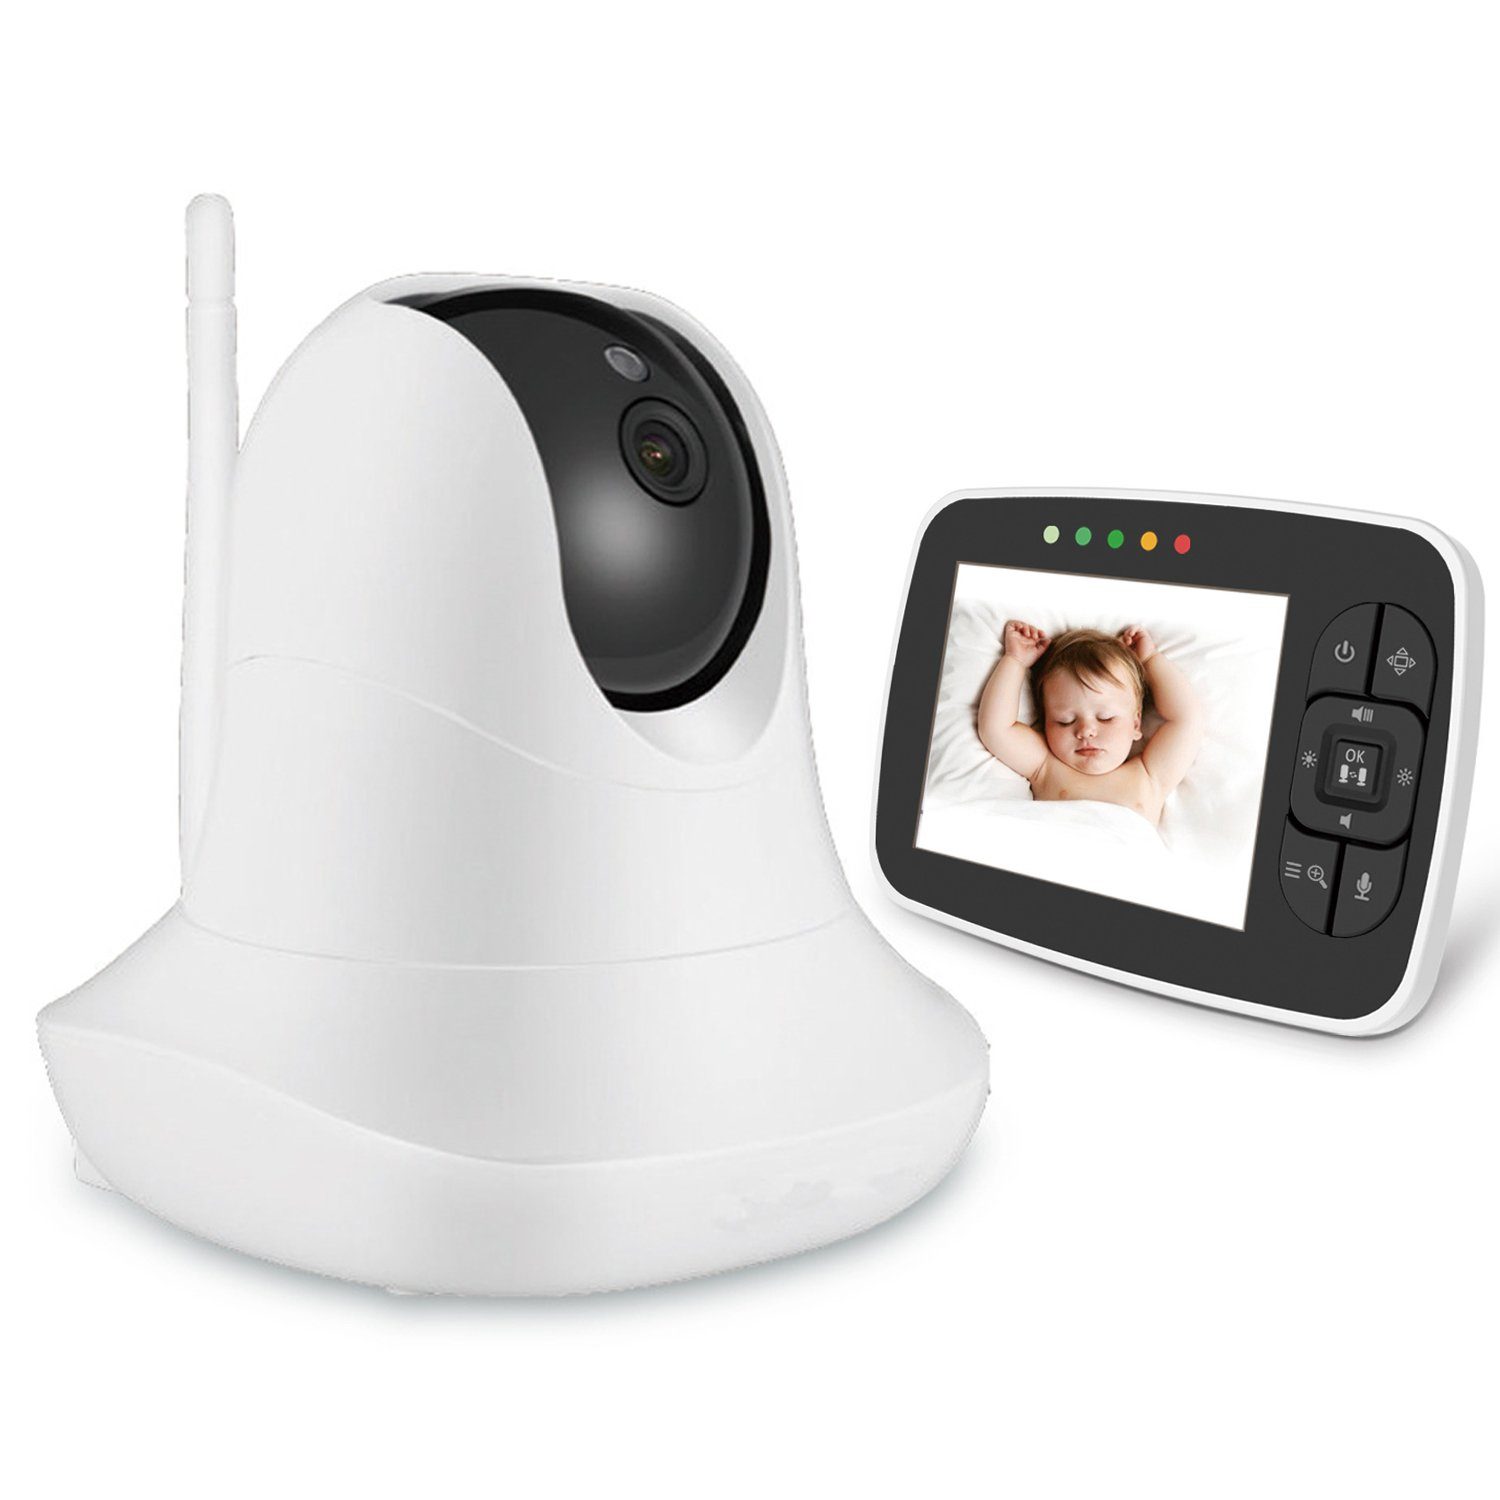 Mutoy Video-Babyphone Babyphone mit kamera, Gegensprechfunktion und Smart ECO-Modus